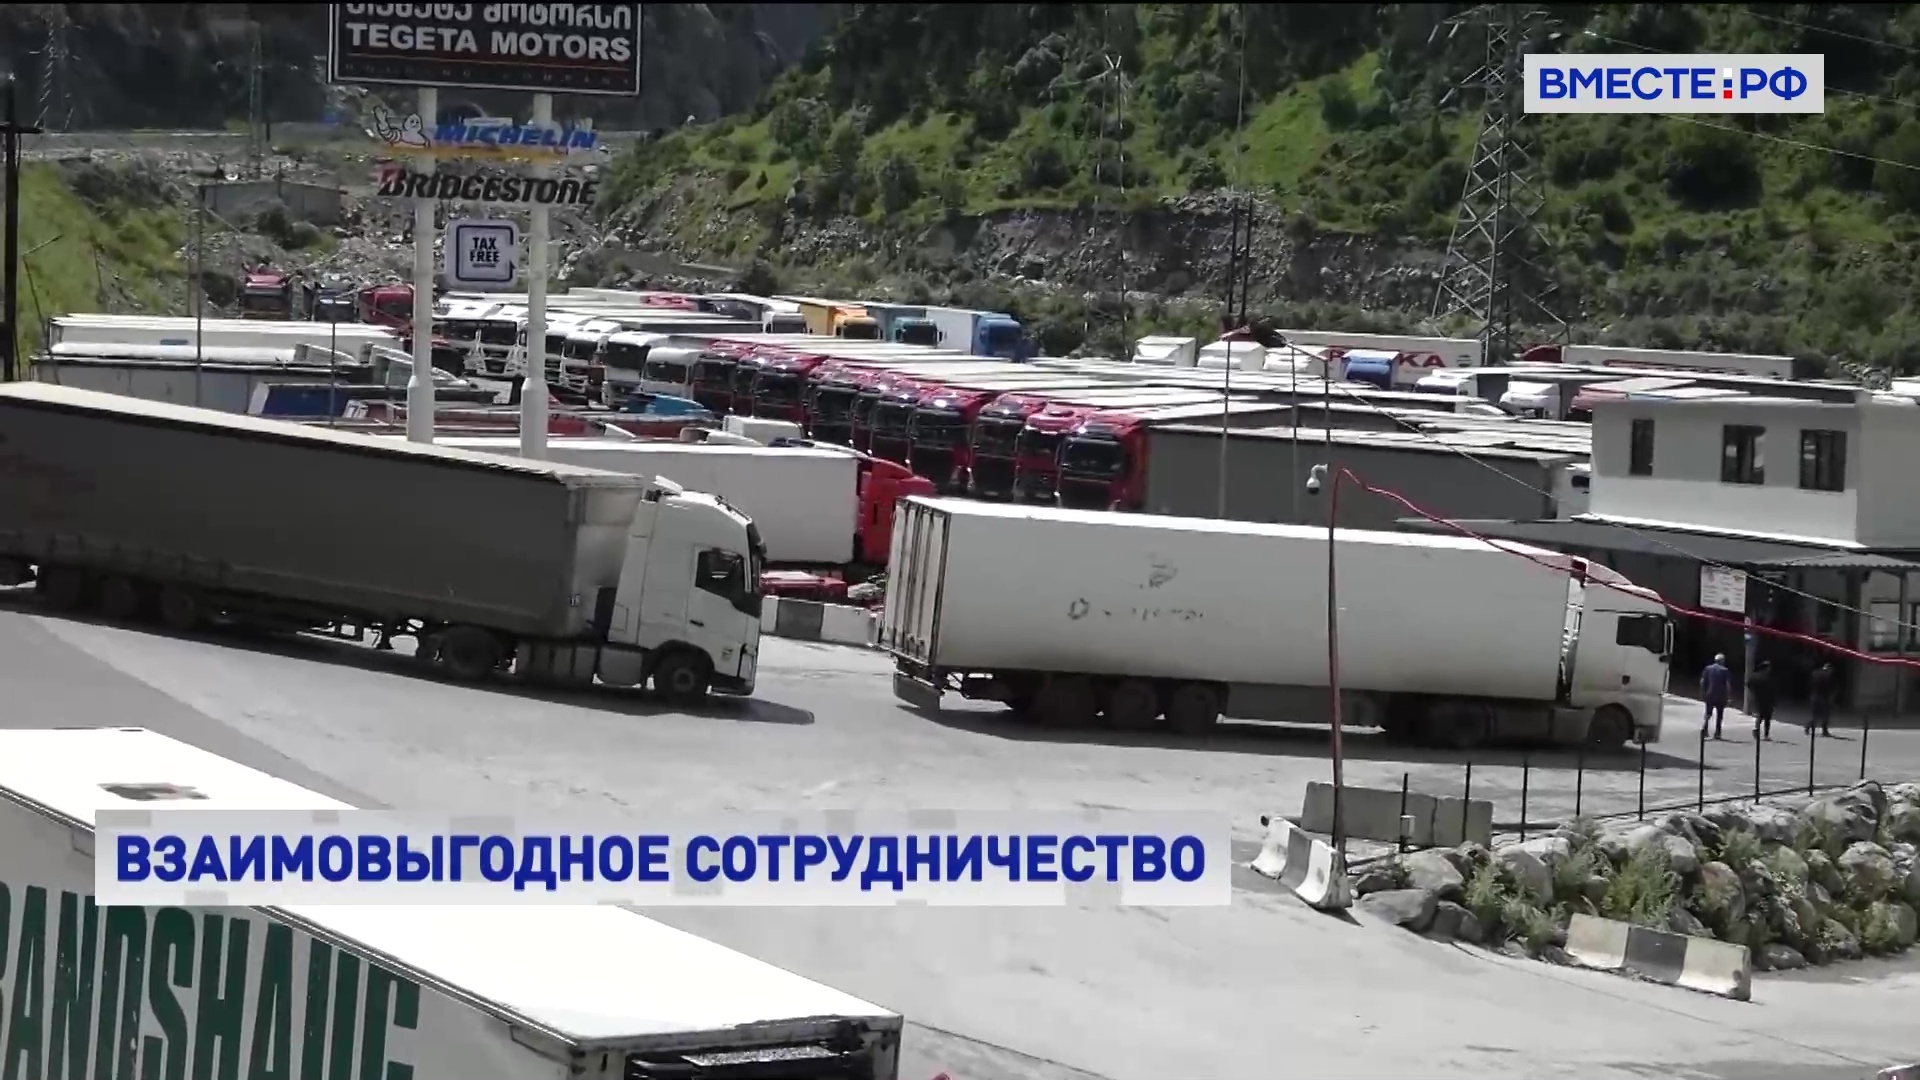 Расширение транспортных коридоров между РФ и Арменией обсудили на заседании межпарламентской комиссии двух стран